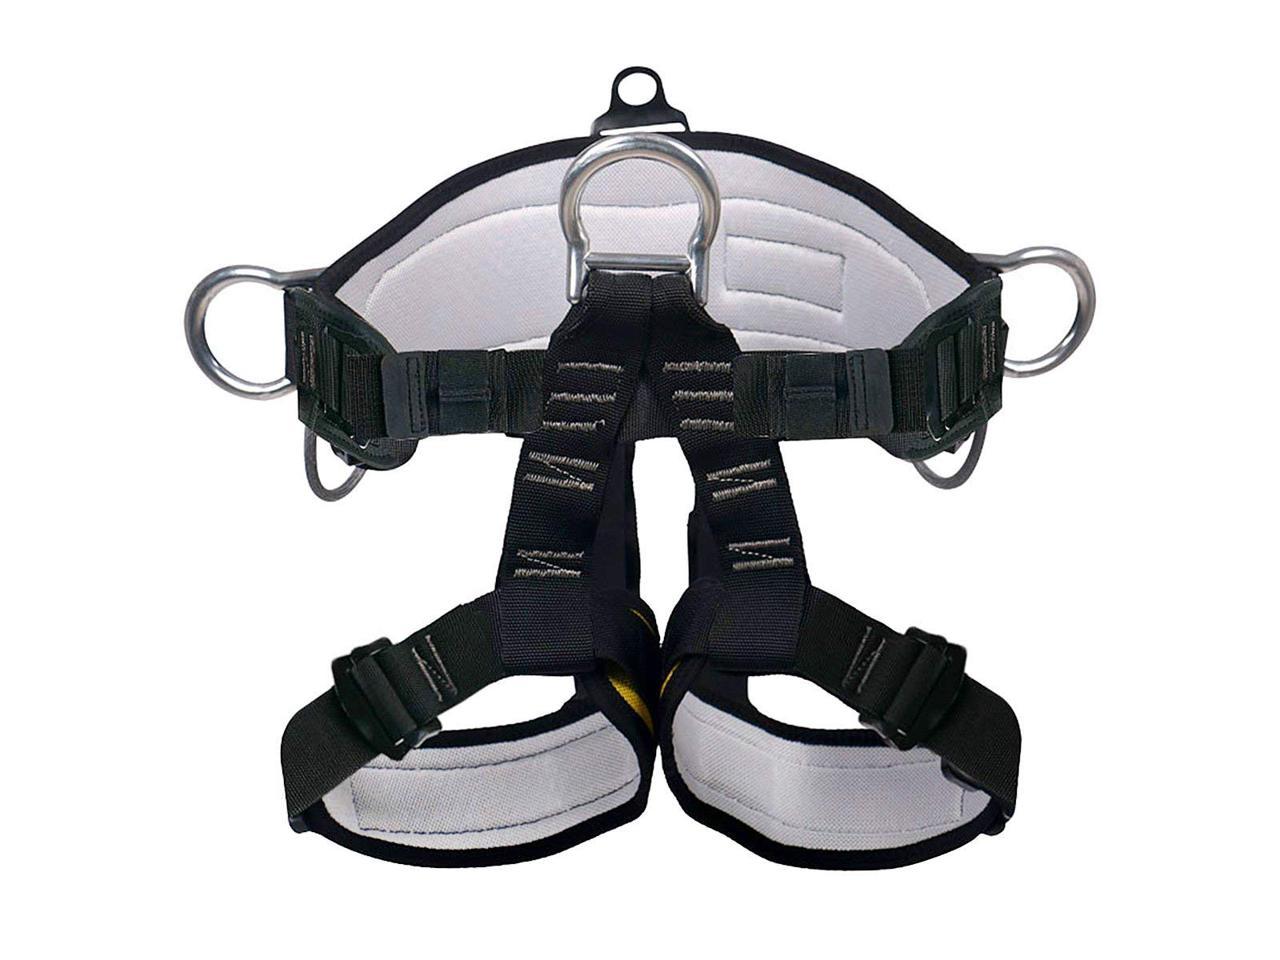 Details about   Thicken Safety Tree Climbing Harness Gear Half Body Wider Seat Waist Belt 